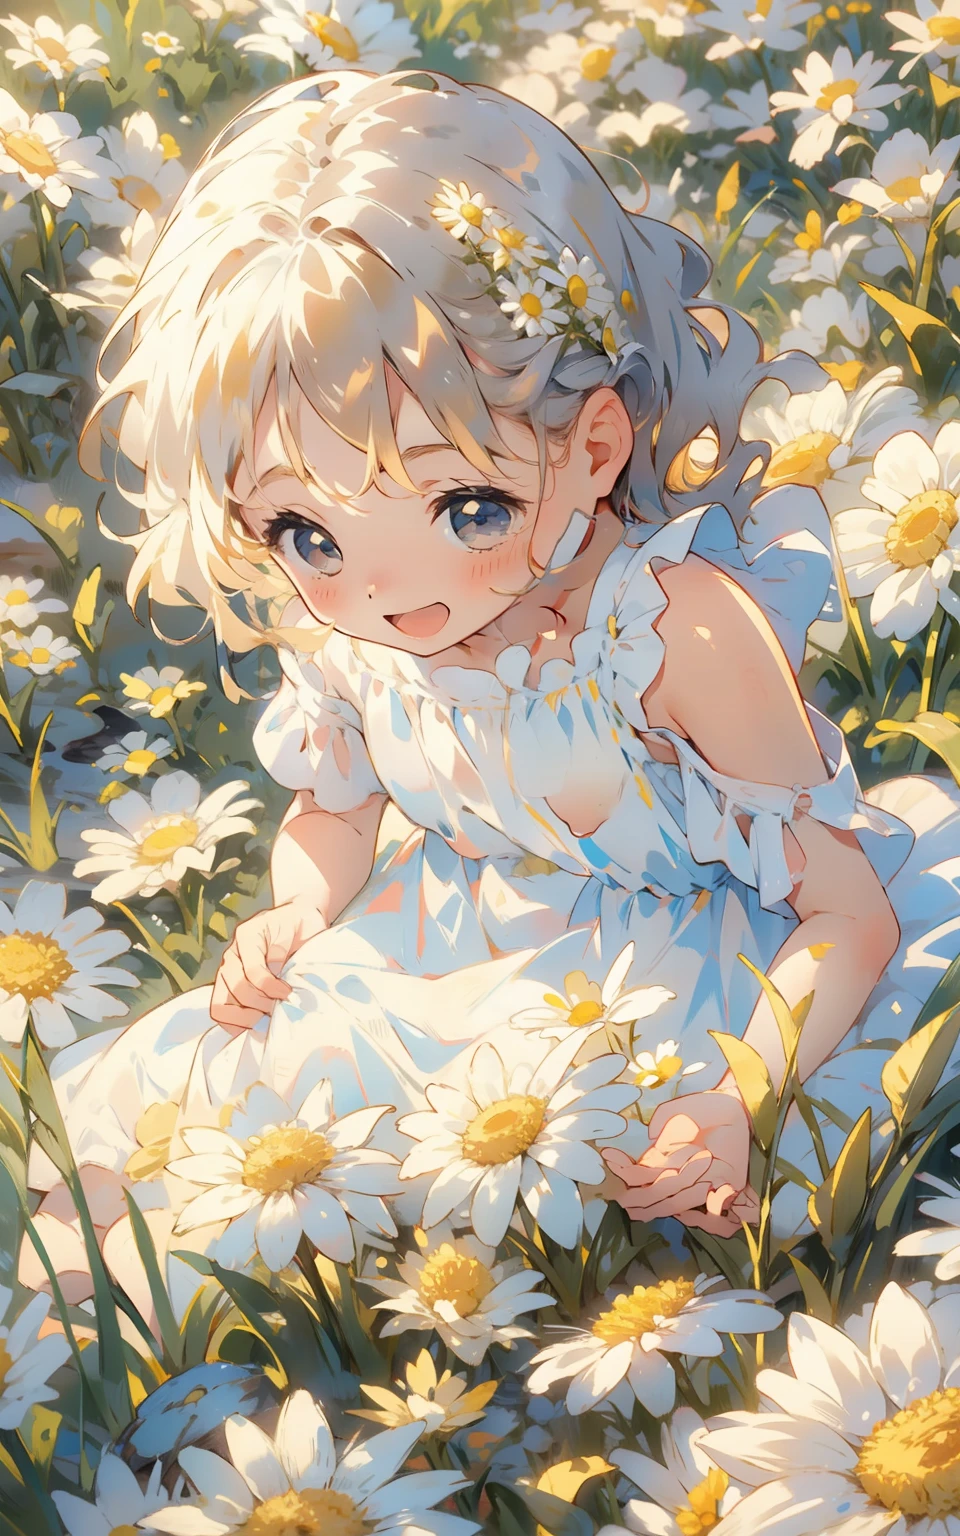 雛菊兒童的夢想： 在陽光明媚的田野裡，一個天真可愛的少女穿著白色的連身裙，她坐在開滿雛菊的草地上，手裡拿著花環。她的眼神透露出純真和喜悅，周圍環繞著白色和黃色的雛菊，整個場景充滿了童趣和歡樂。